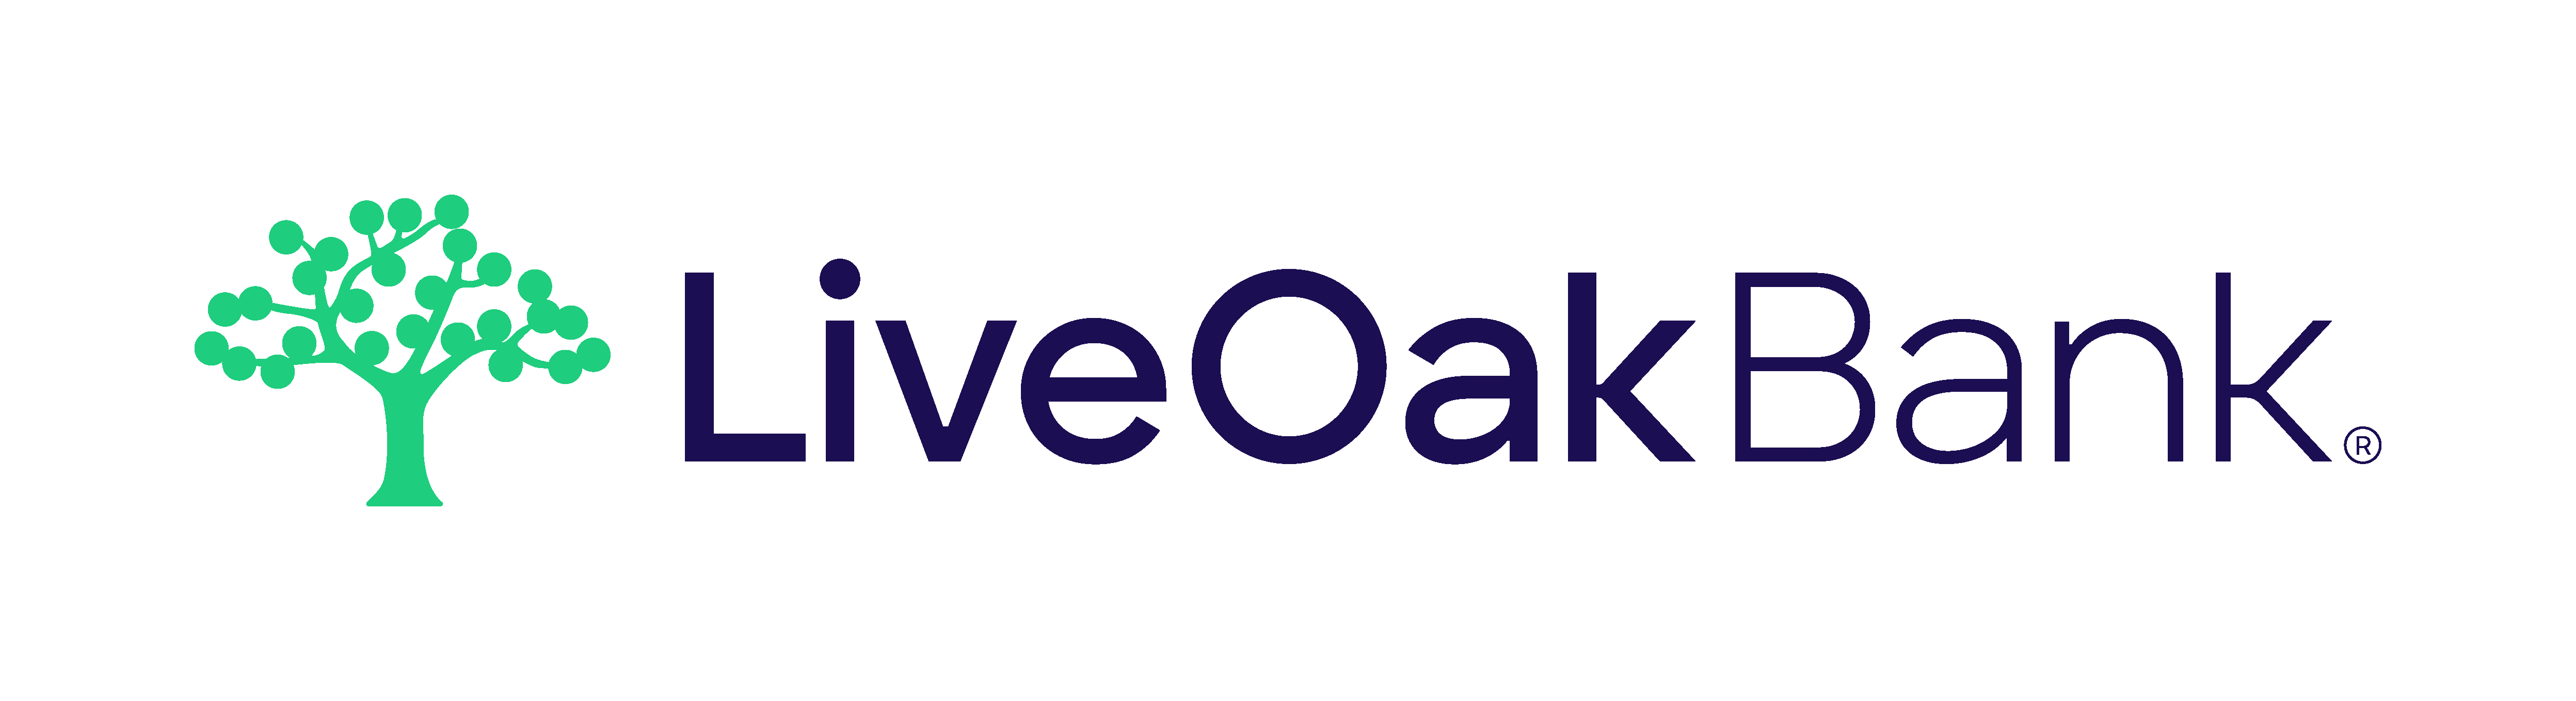 Live Oak Bank 